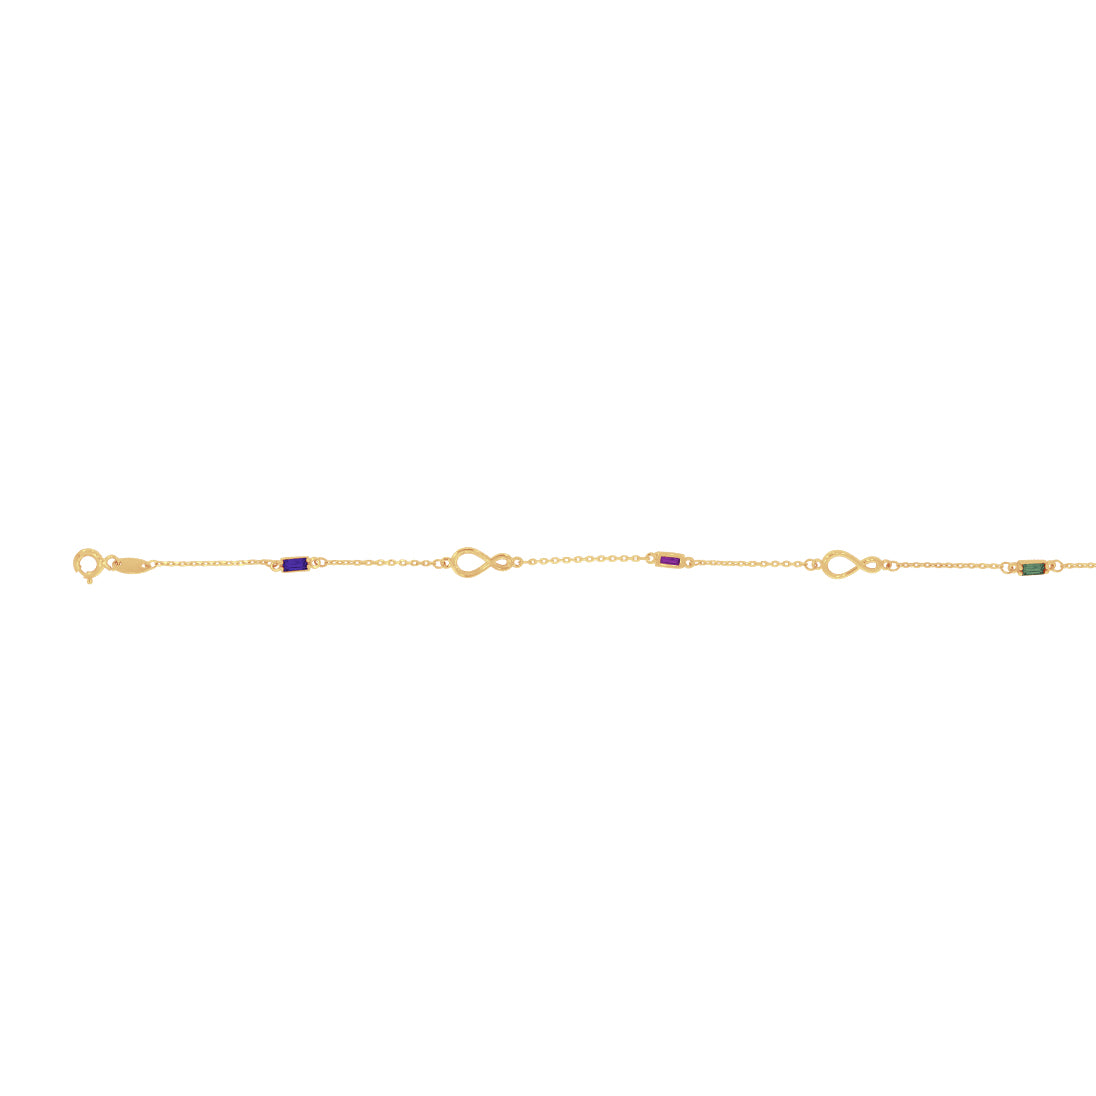 Pulsera Oro 10k - Zirconias de Colores con Infintitos, Largo 18 cm